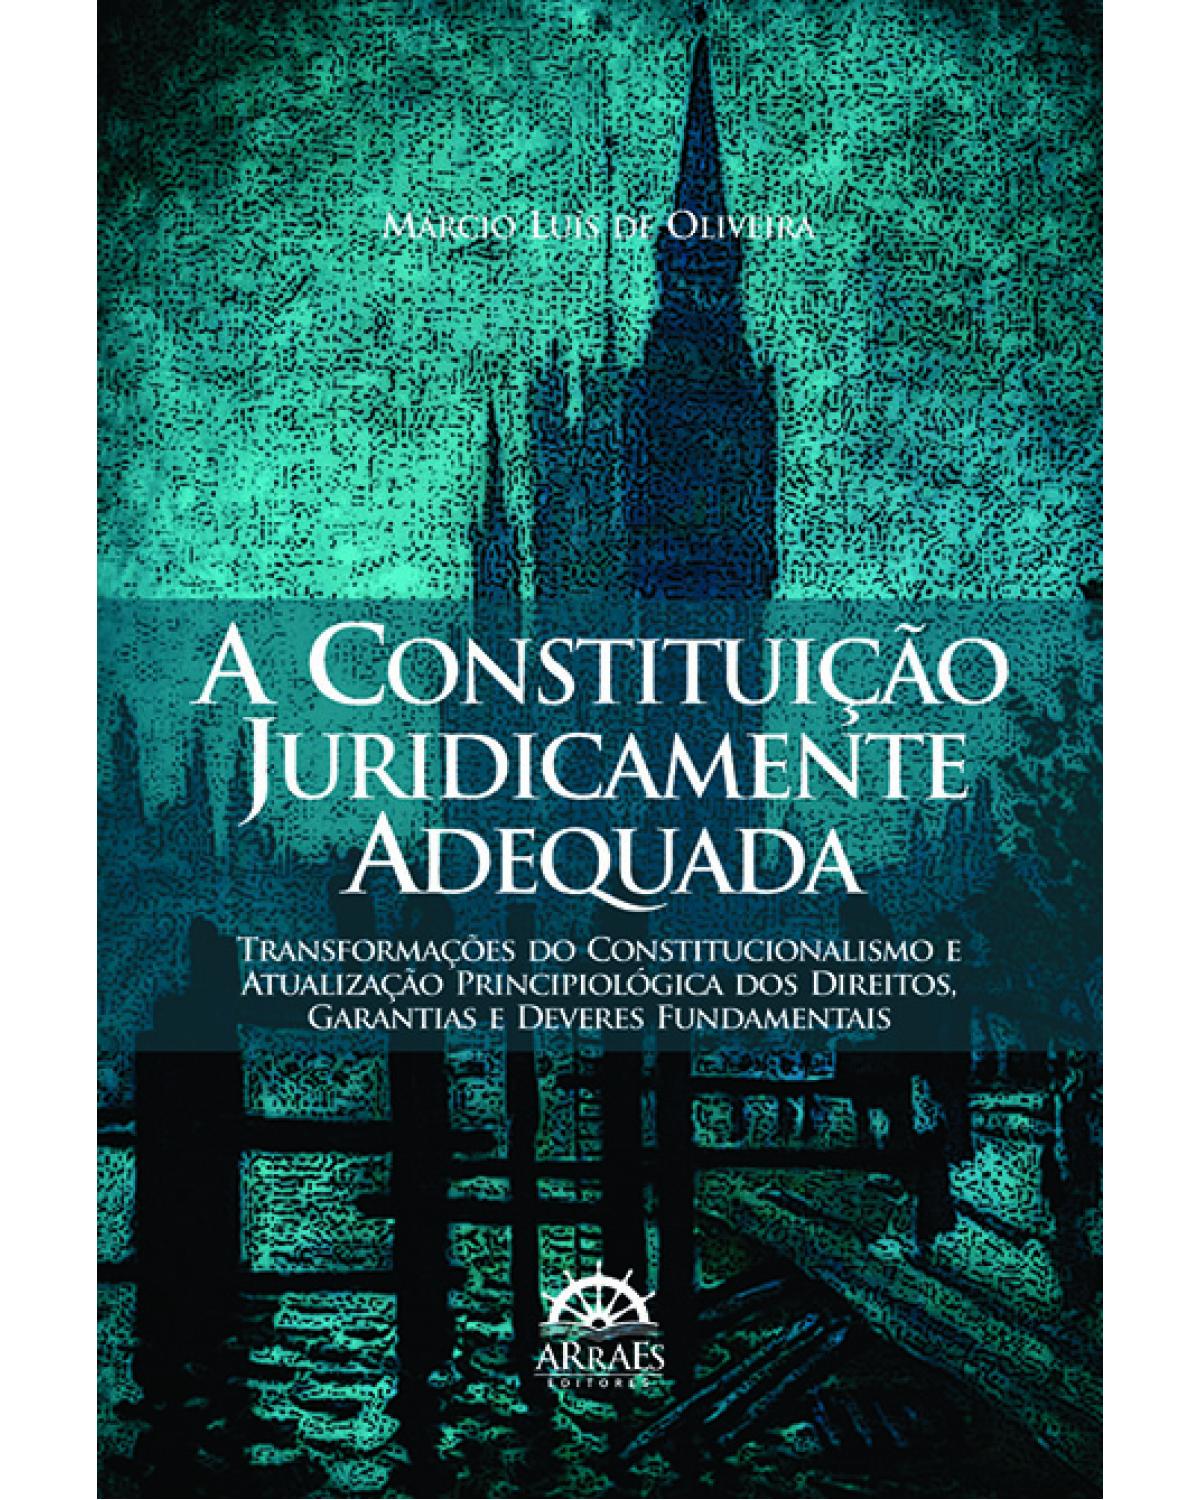 A constituição juridicamente adequada - transformações do constitucionalismo e atualização principiológica dos direitos, garantias e deveres fundamentais - 1ª Edição | 2013